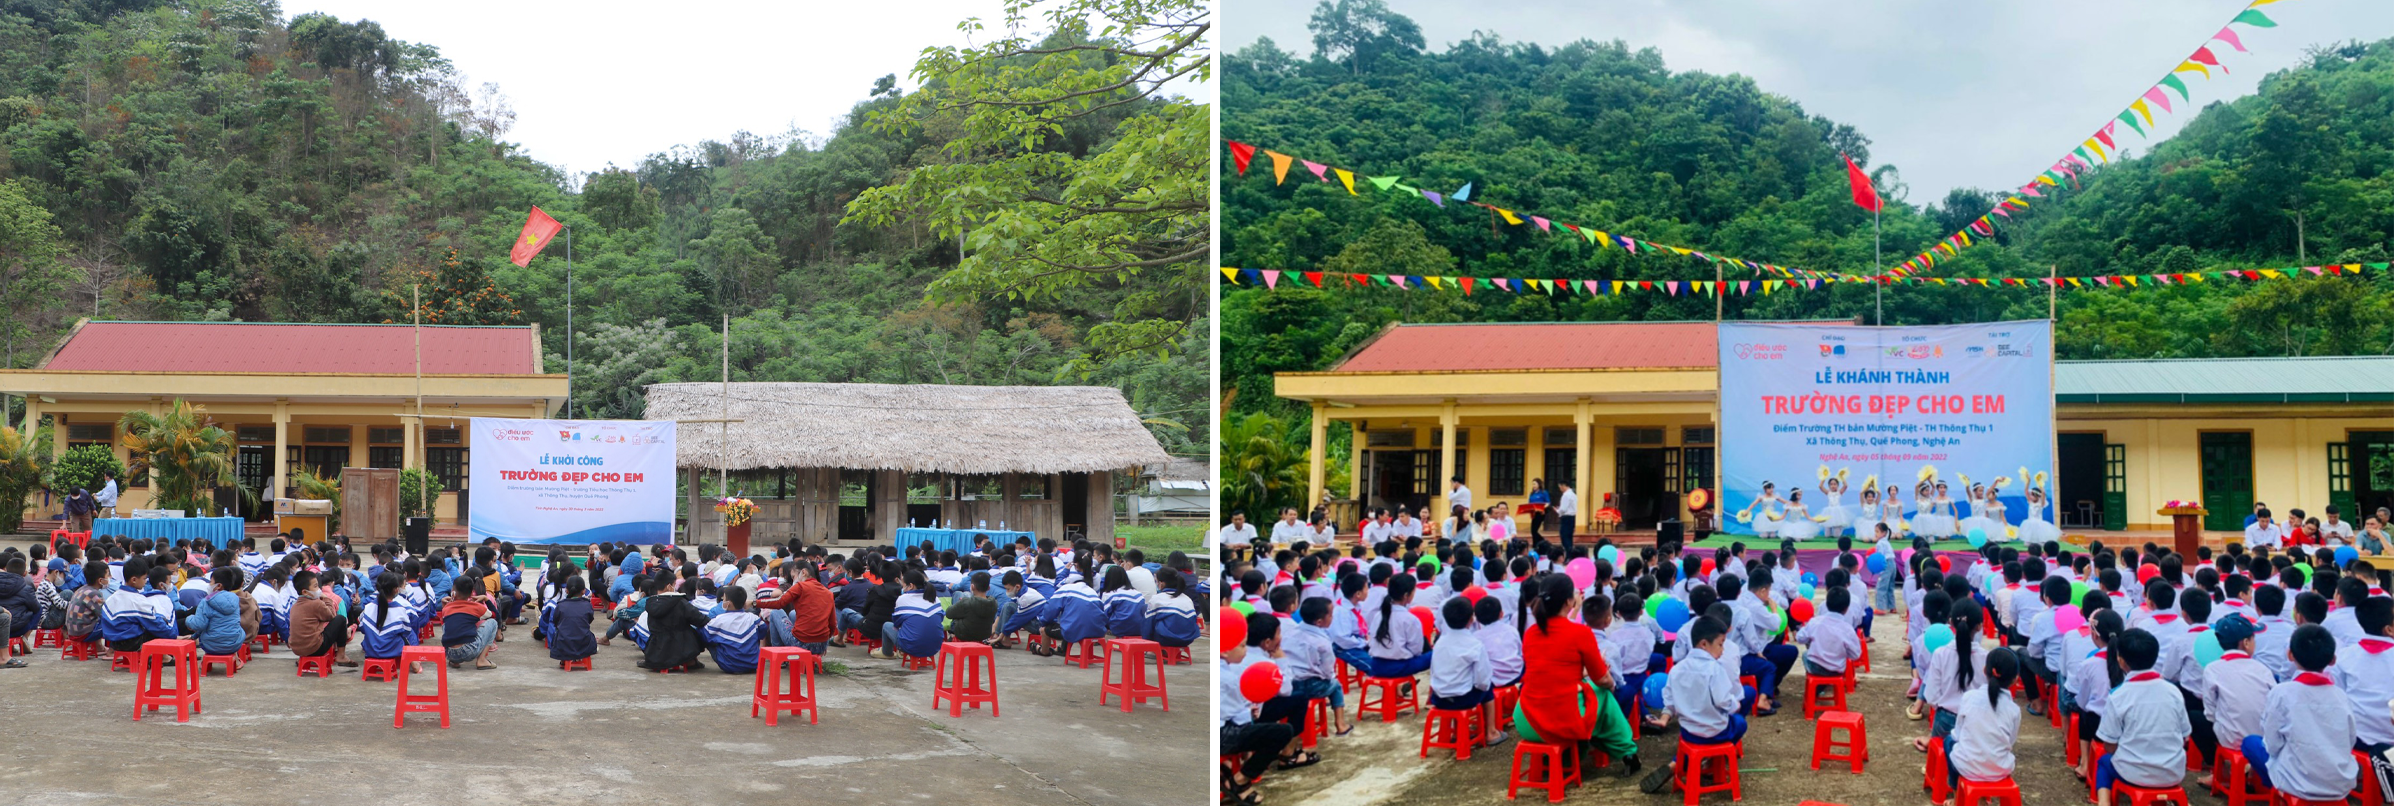 Điểm trường Mường Piệt - Trường Tiểu học Thông Thụ 1 (Quế Phong) trước và sau khi xây dựng.